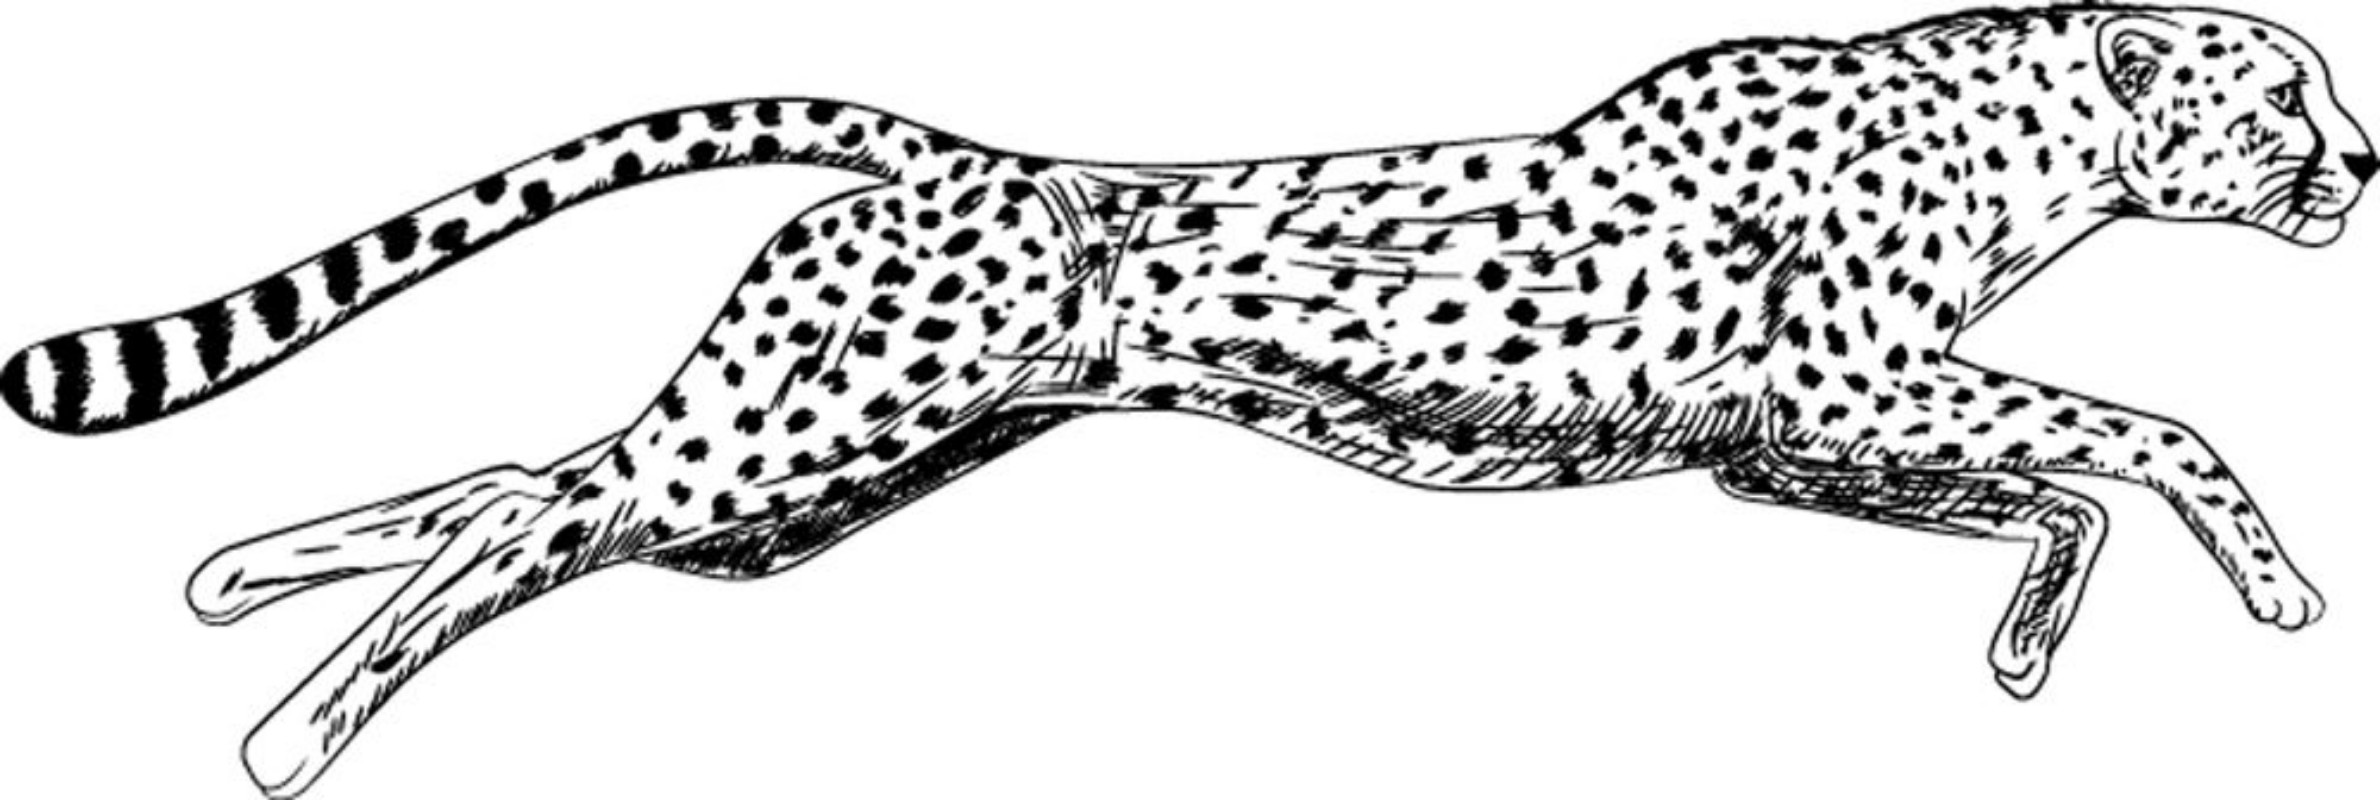 Afbeeldingen van Hand drawn sketch of running cheetah Vector illustration